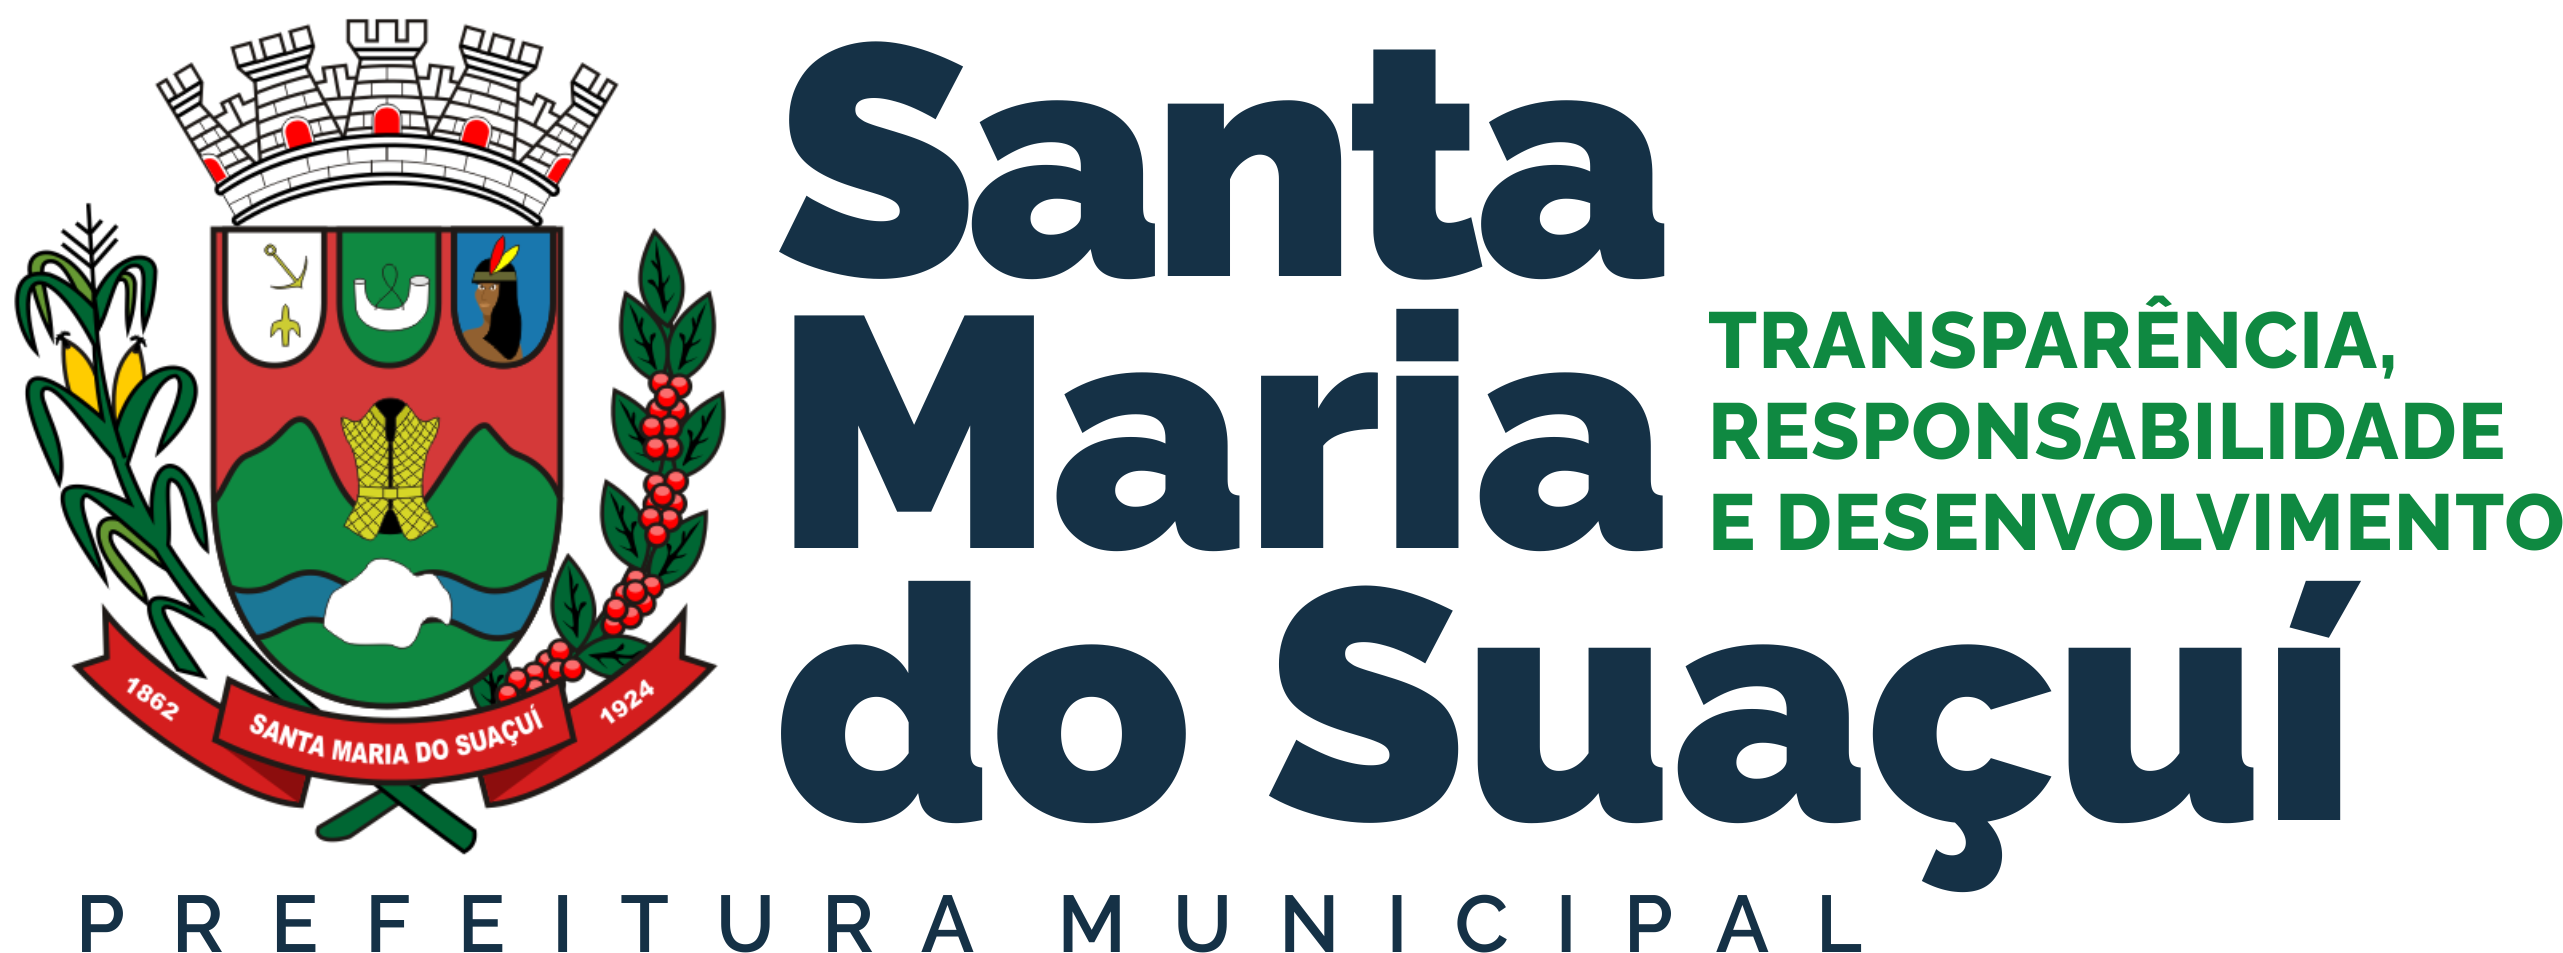 Prefeitura Municipal de Santa Maria do Suaçuí